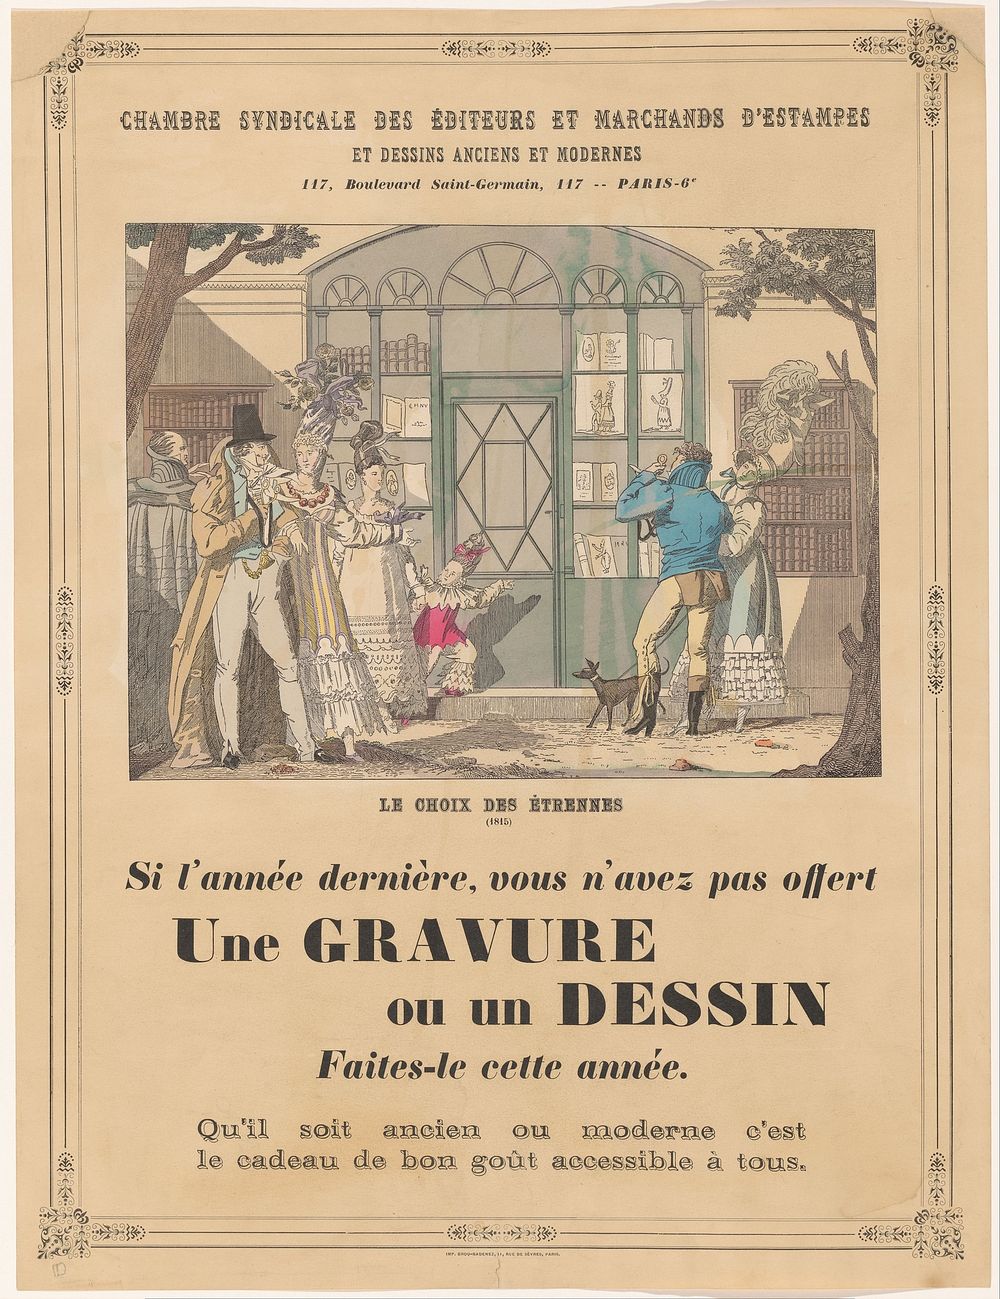 Affiche van de Chambre Syndicale des Éditeurs et Marchands d'Estampes et Dessins Anciens et Modernes te Parijs (1919 - 1952)…